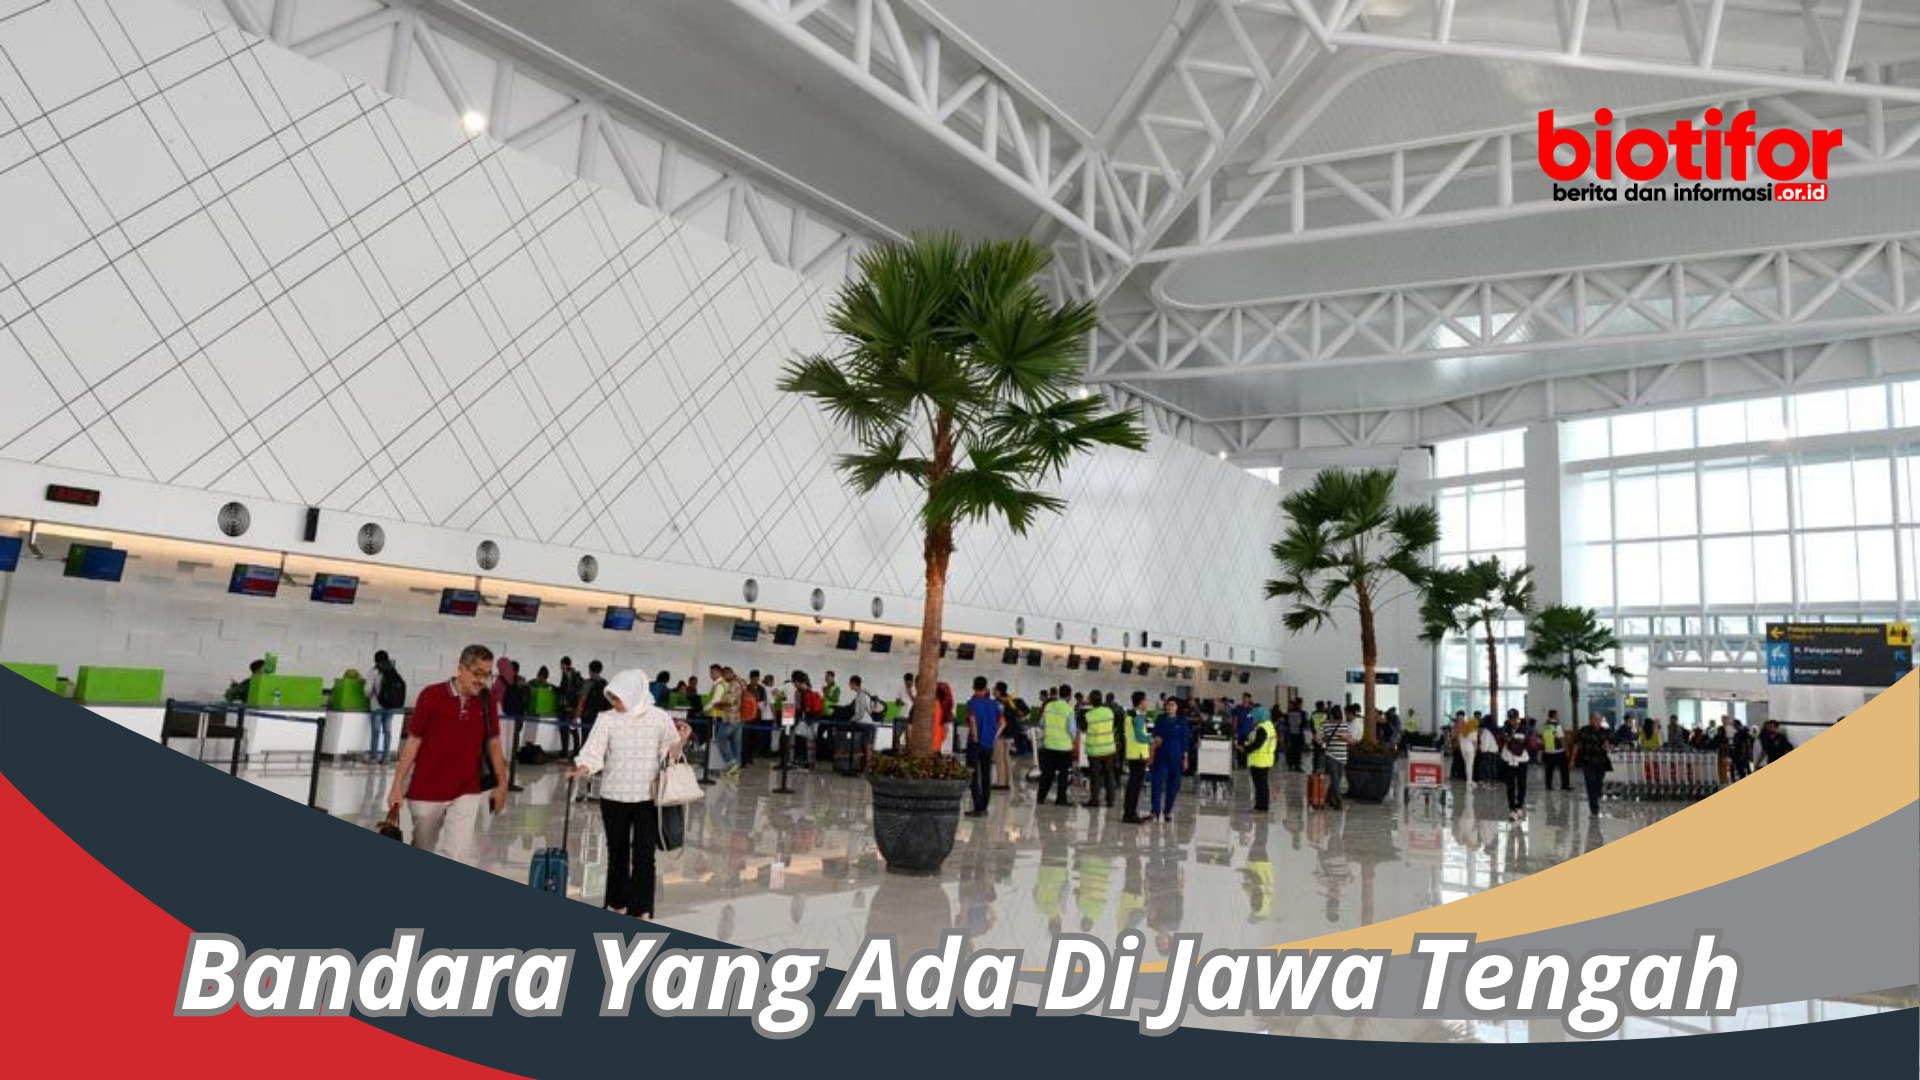 Bandara Yang Ada Di Jawa Tengah